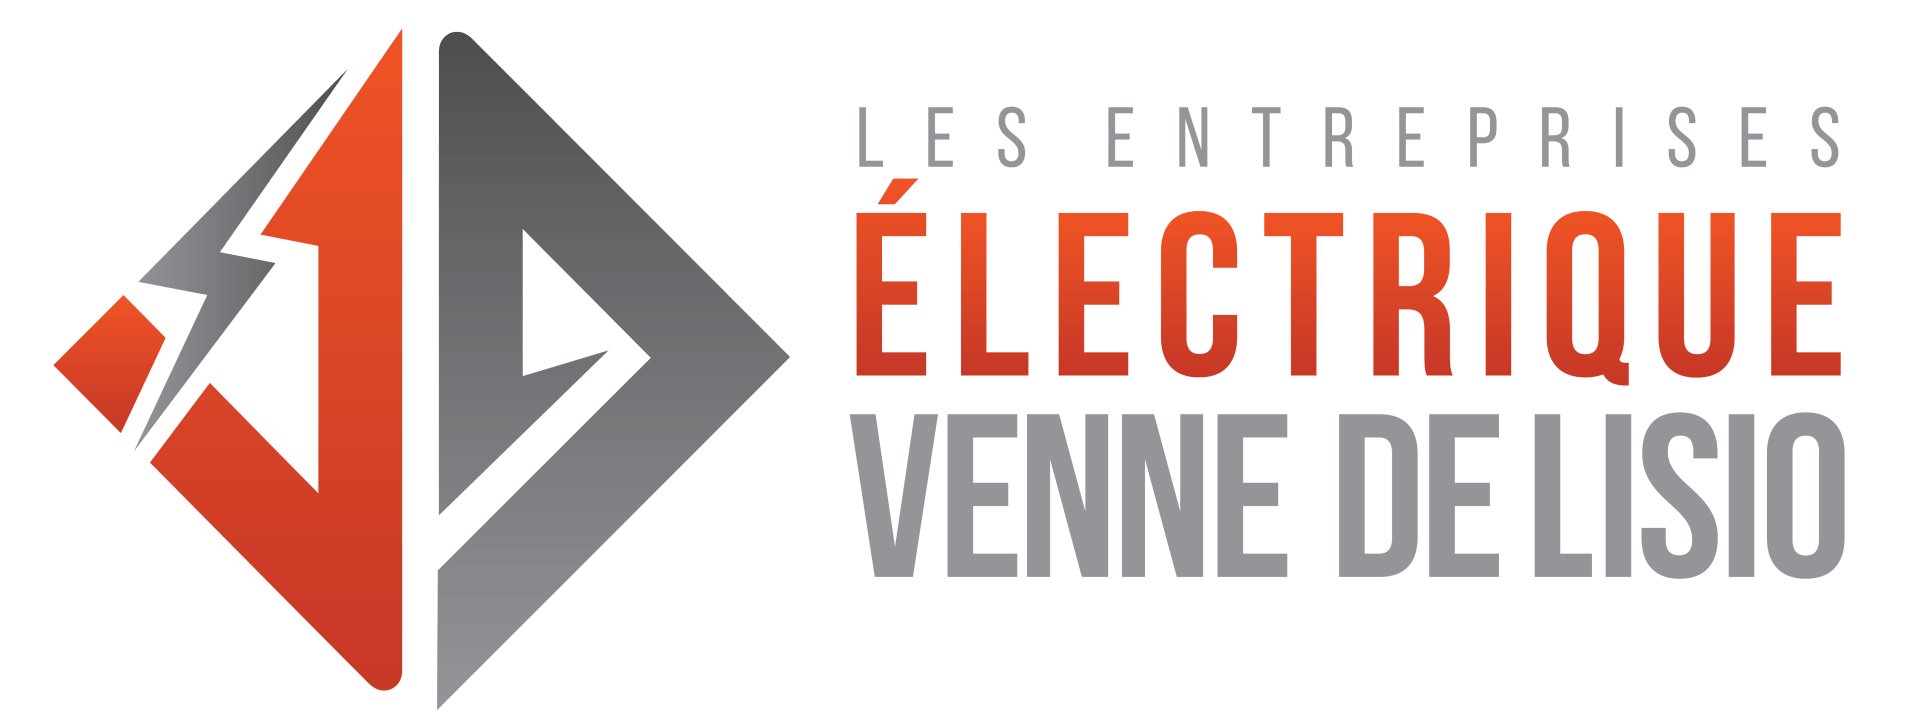 LOGO Les Entreprises Electriques Venne De Lisio Inc.